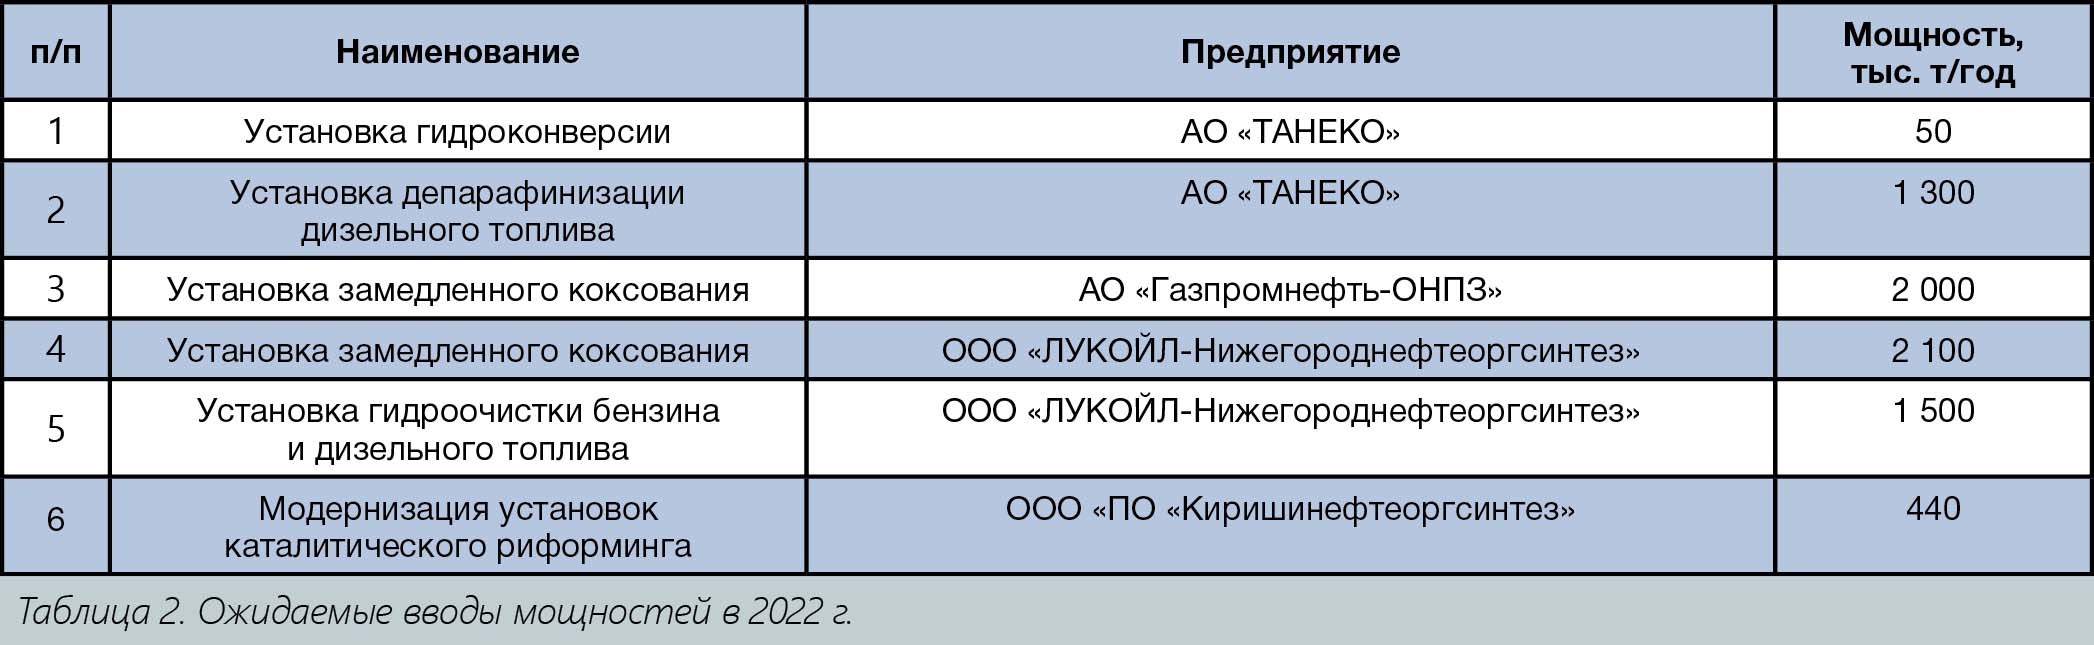 Толстенко И.Е. Юбилейное совещание главных механиков – 2022